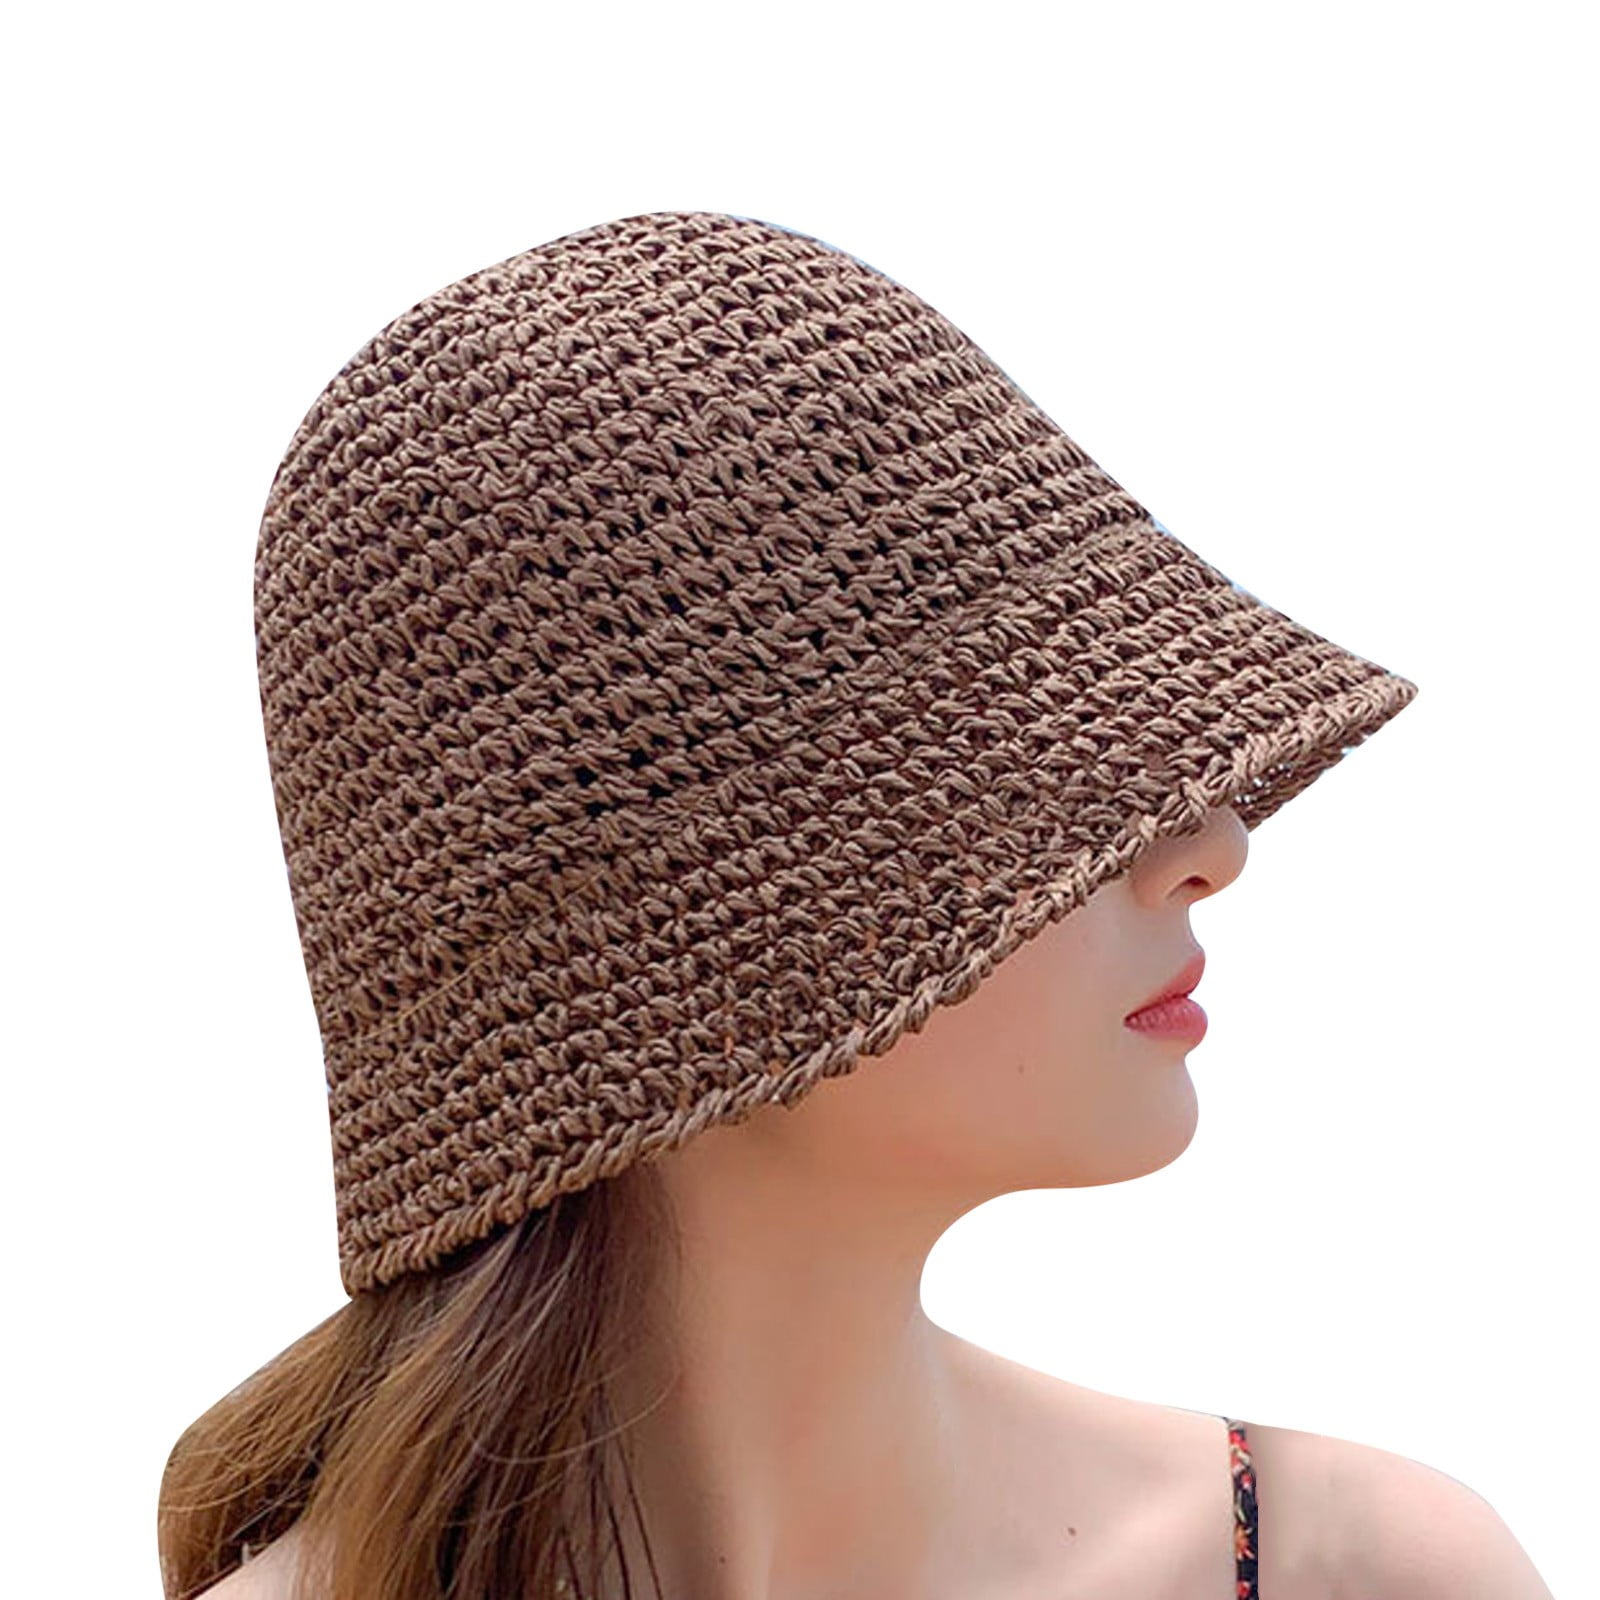 Sun Hats for Women, Beach Hats